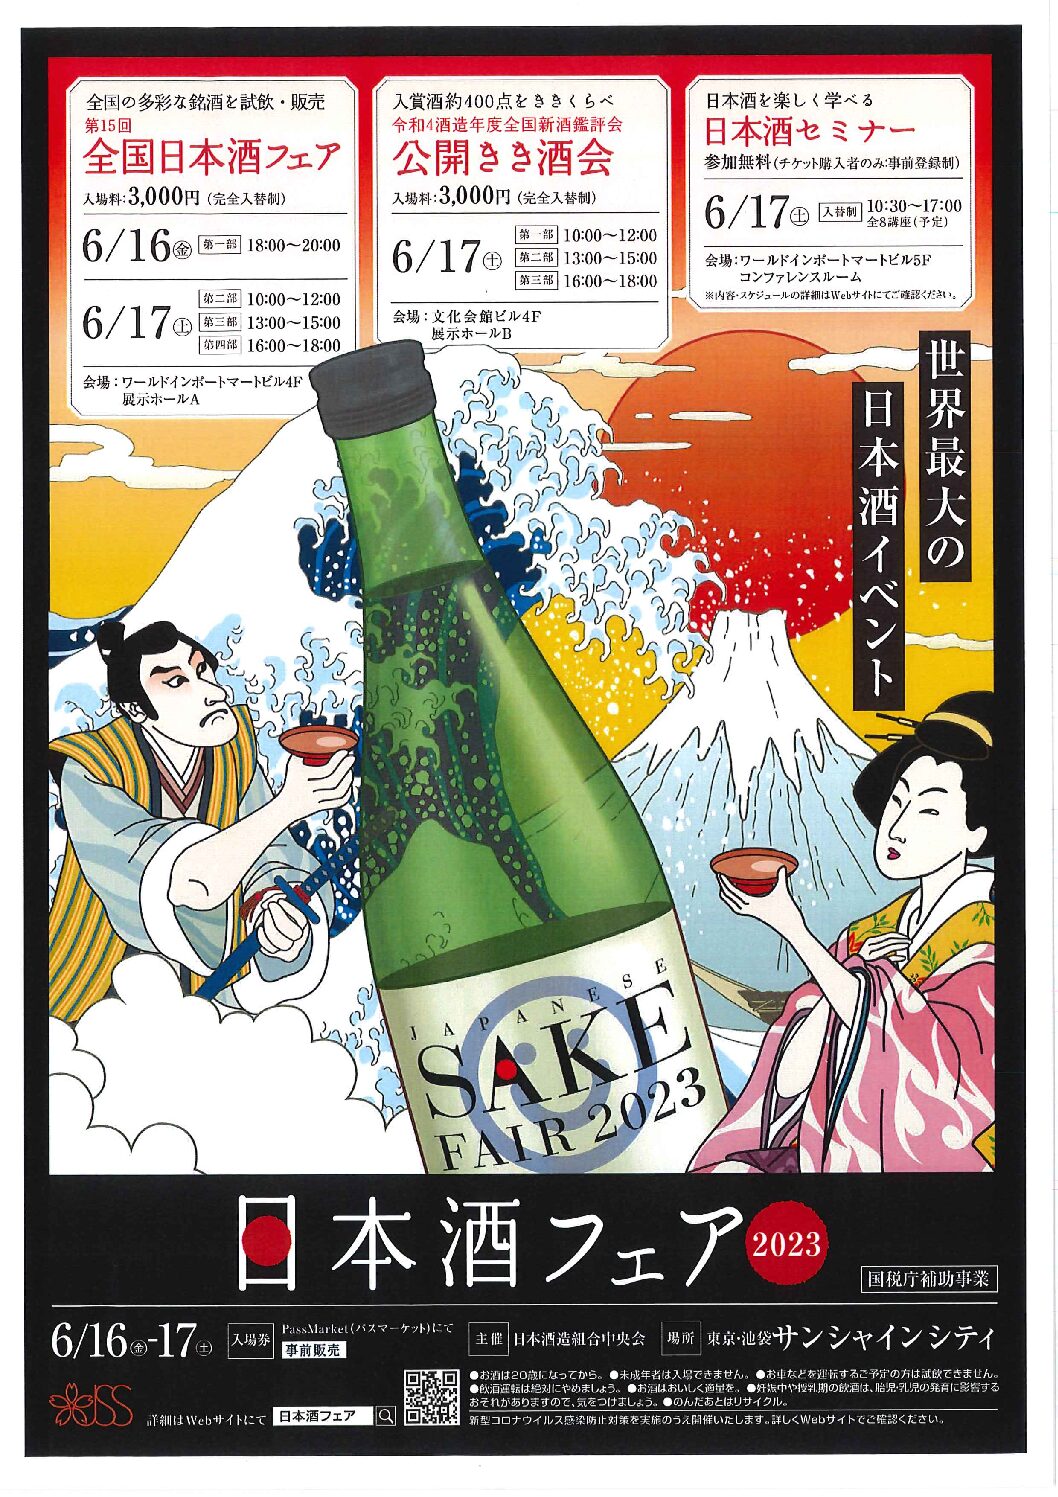 日本酒フェア2023